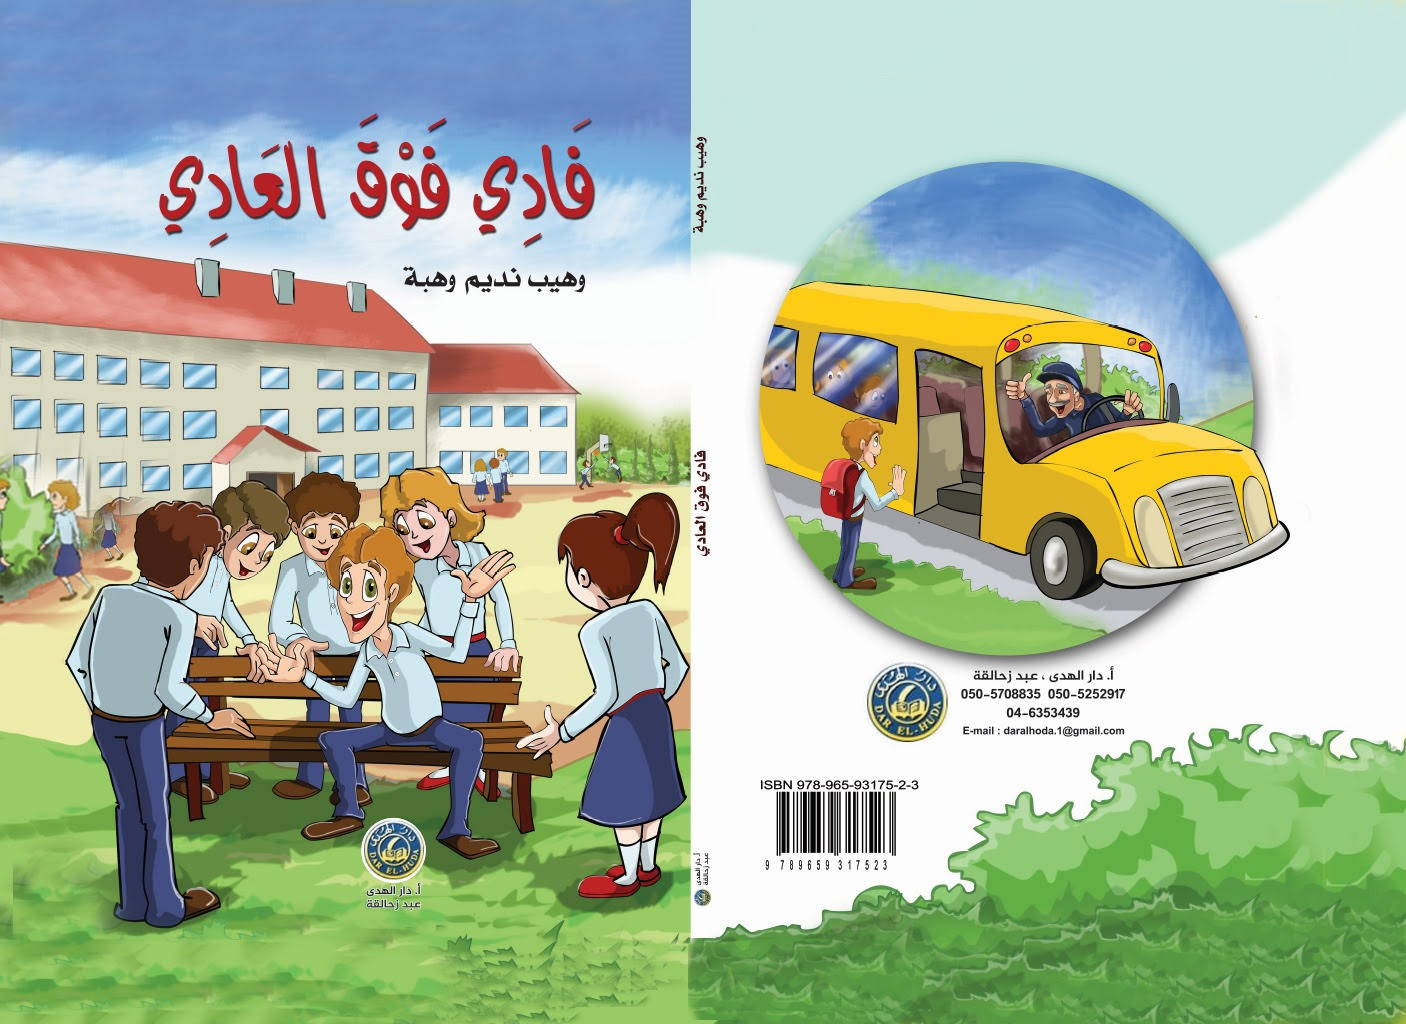  فادي فوق العادي قصة كاريكاتيريّة للأطفال تأليف وهيب نديم وهبة